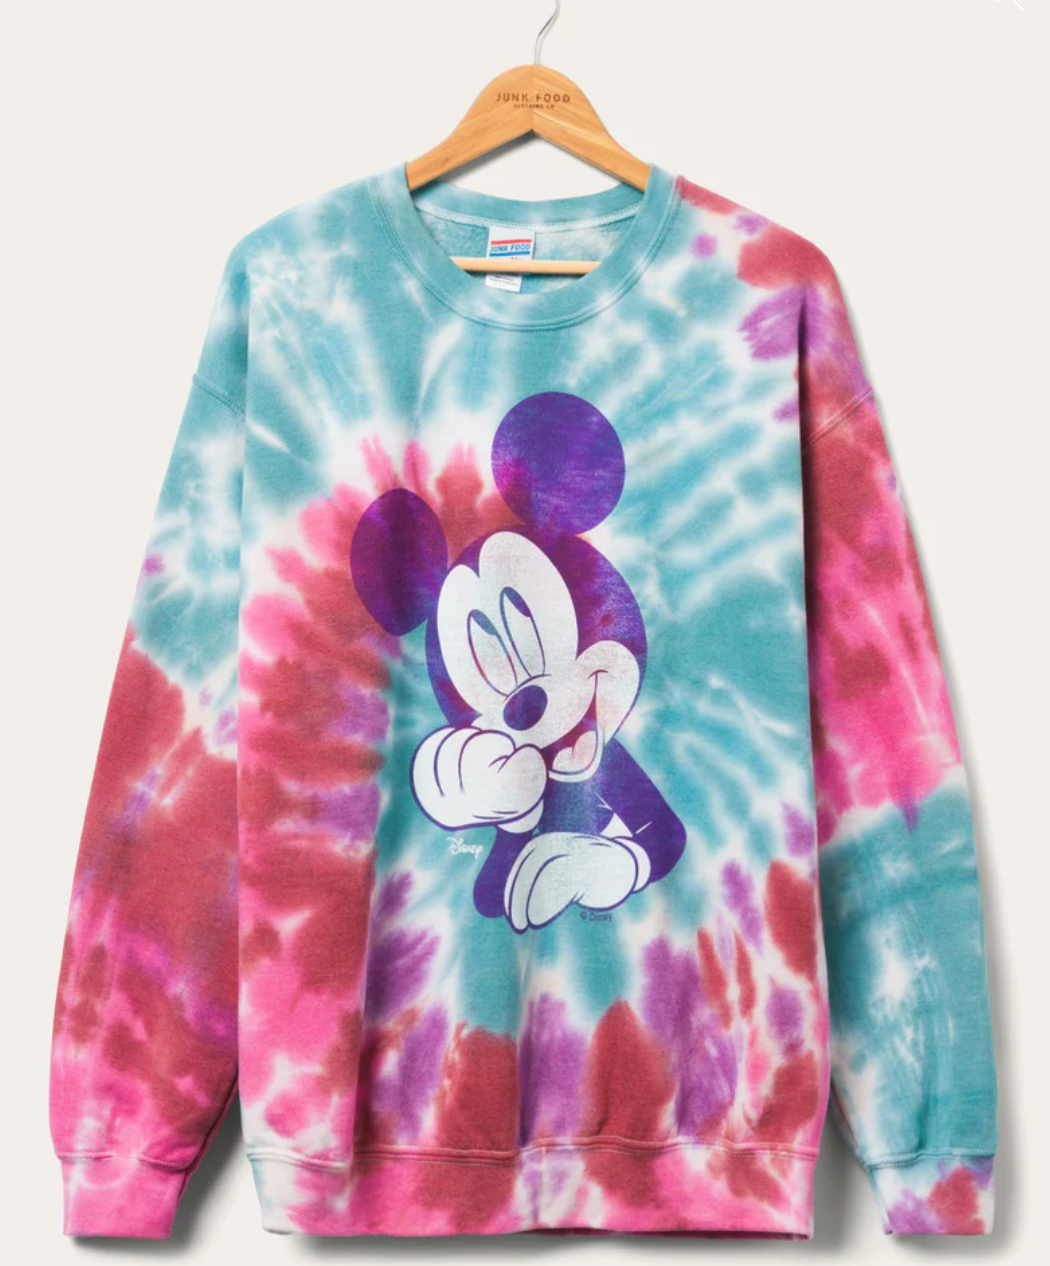 Junk Food Micky Mouse Tie Dye Sweatshirt